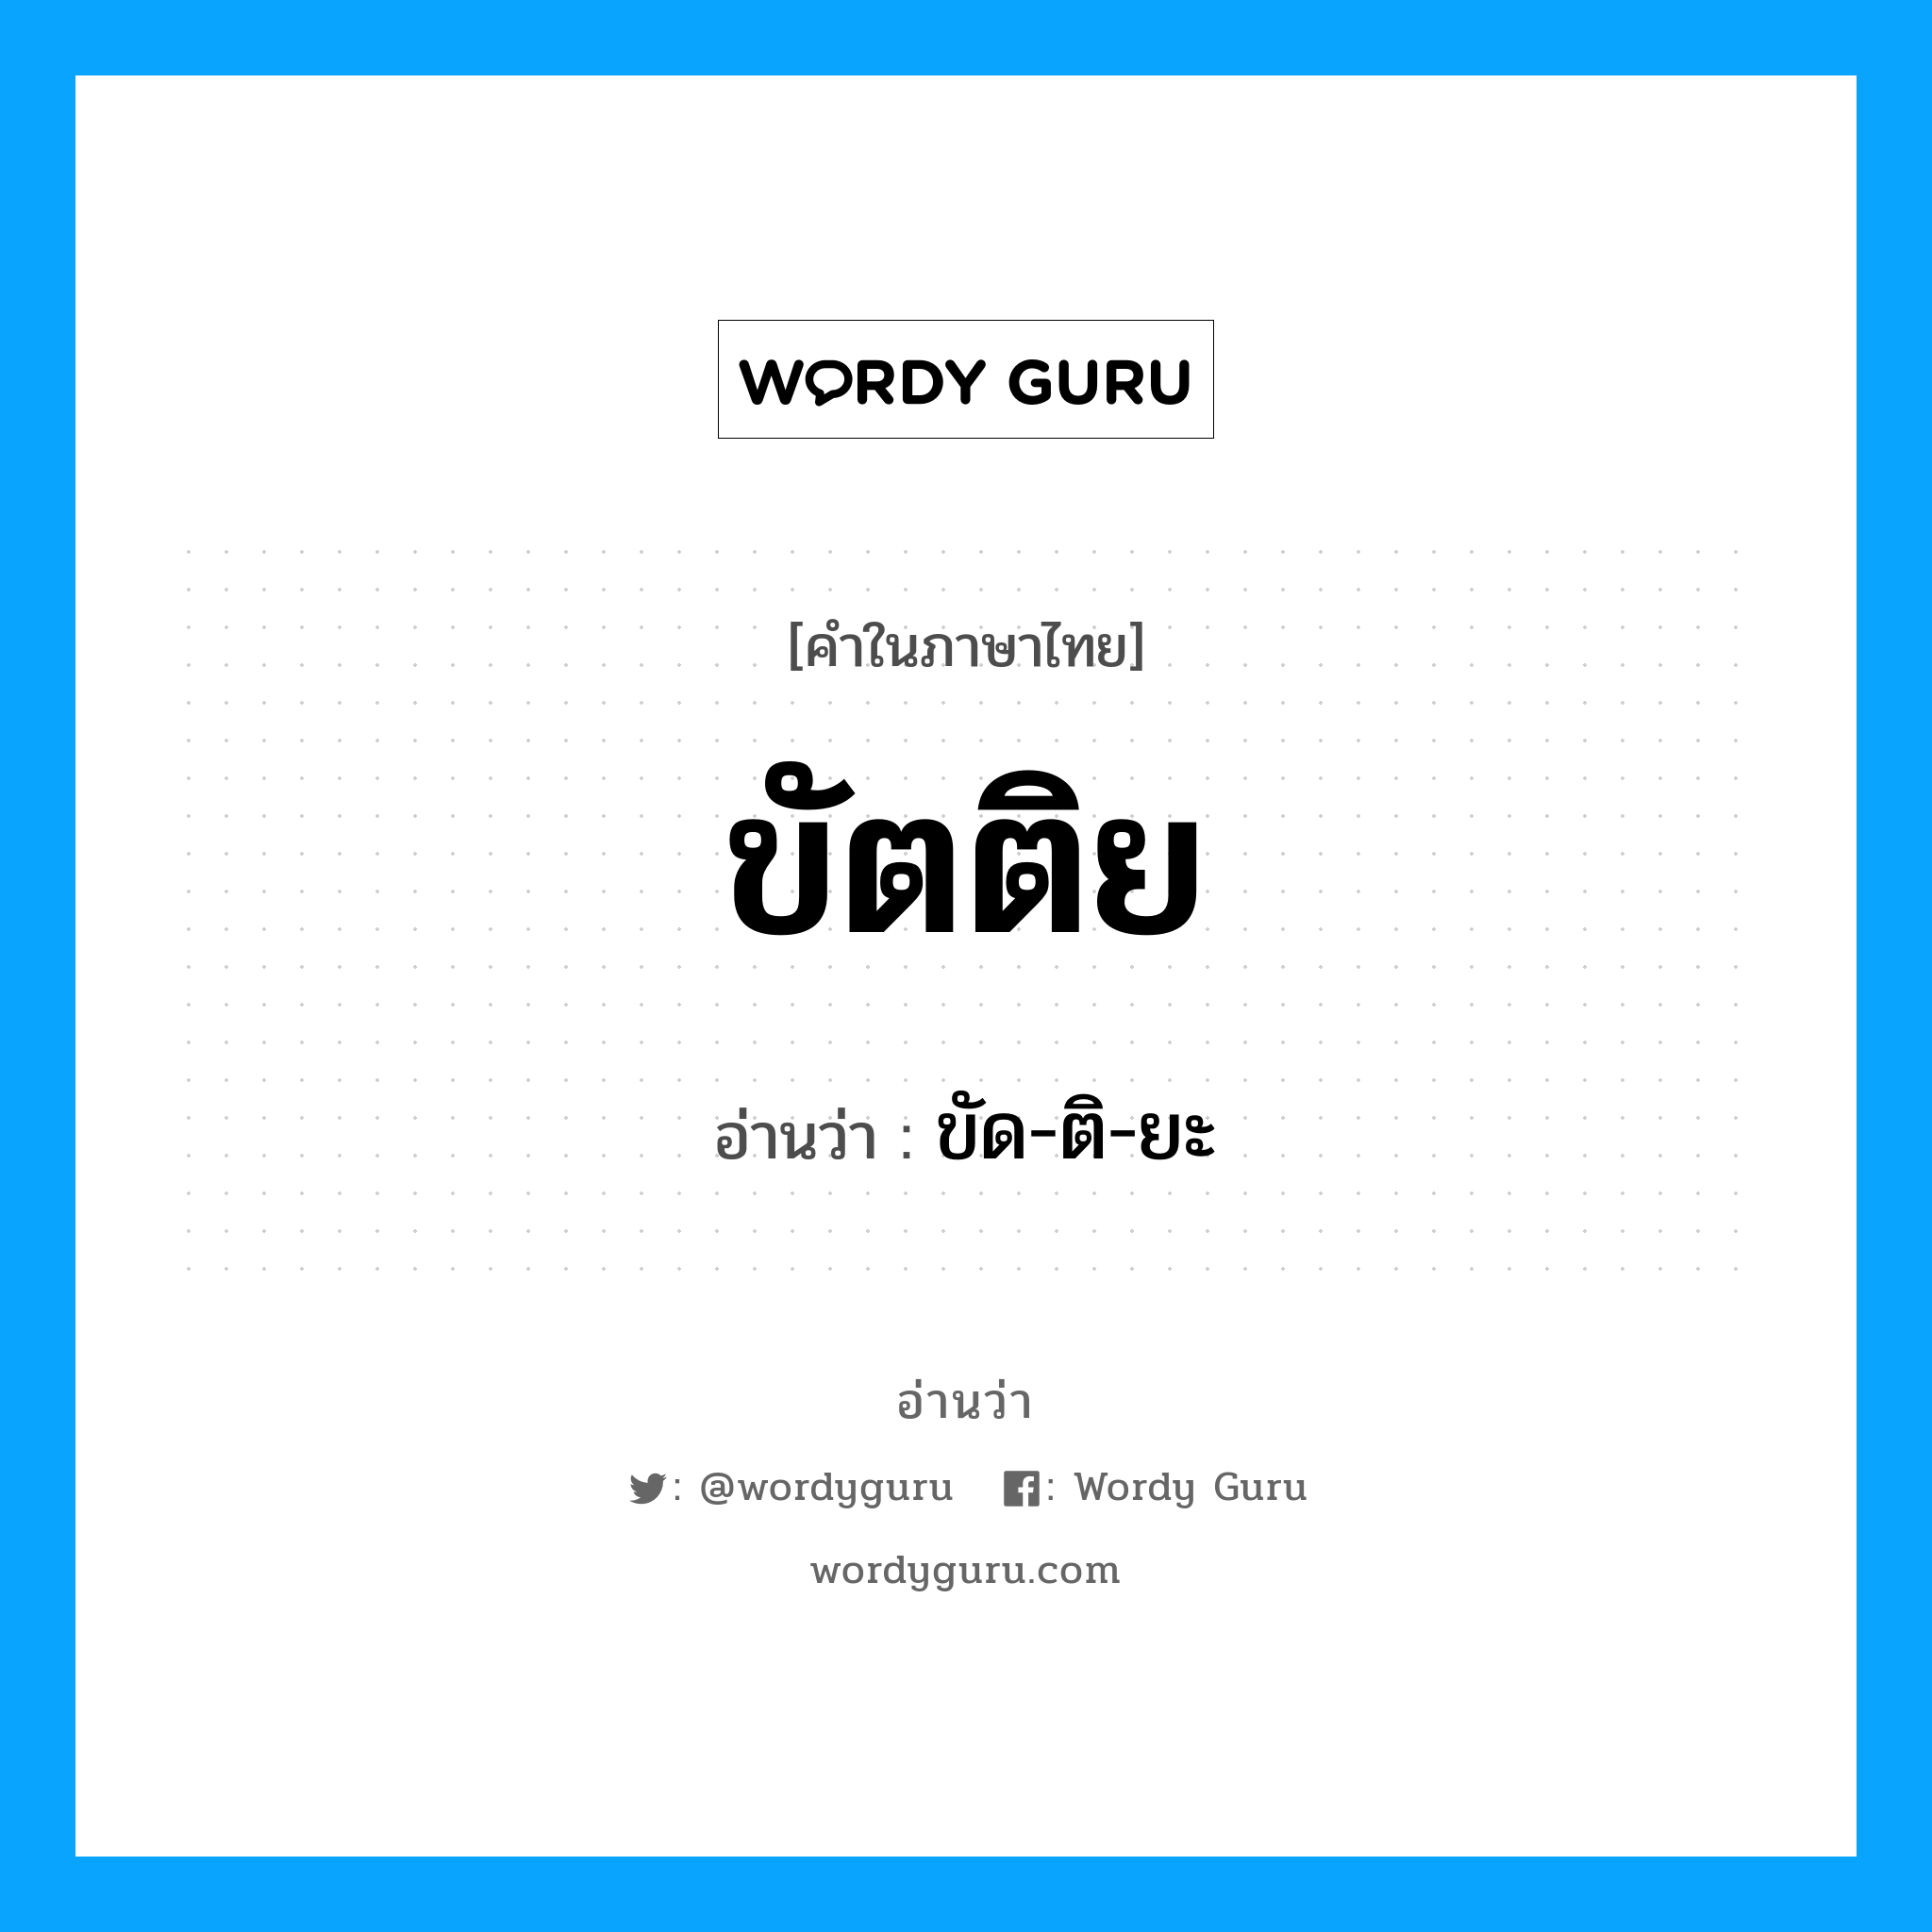 ขัด-ติ-ยะ เป็นคำอ่านของคำไหน?, คำในภาษาไทย ขัด-ติ-ยะ อ่านว่า ขัตติย